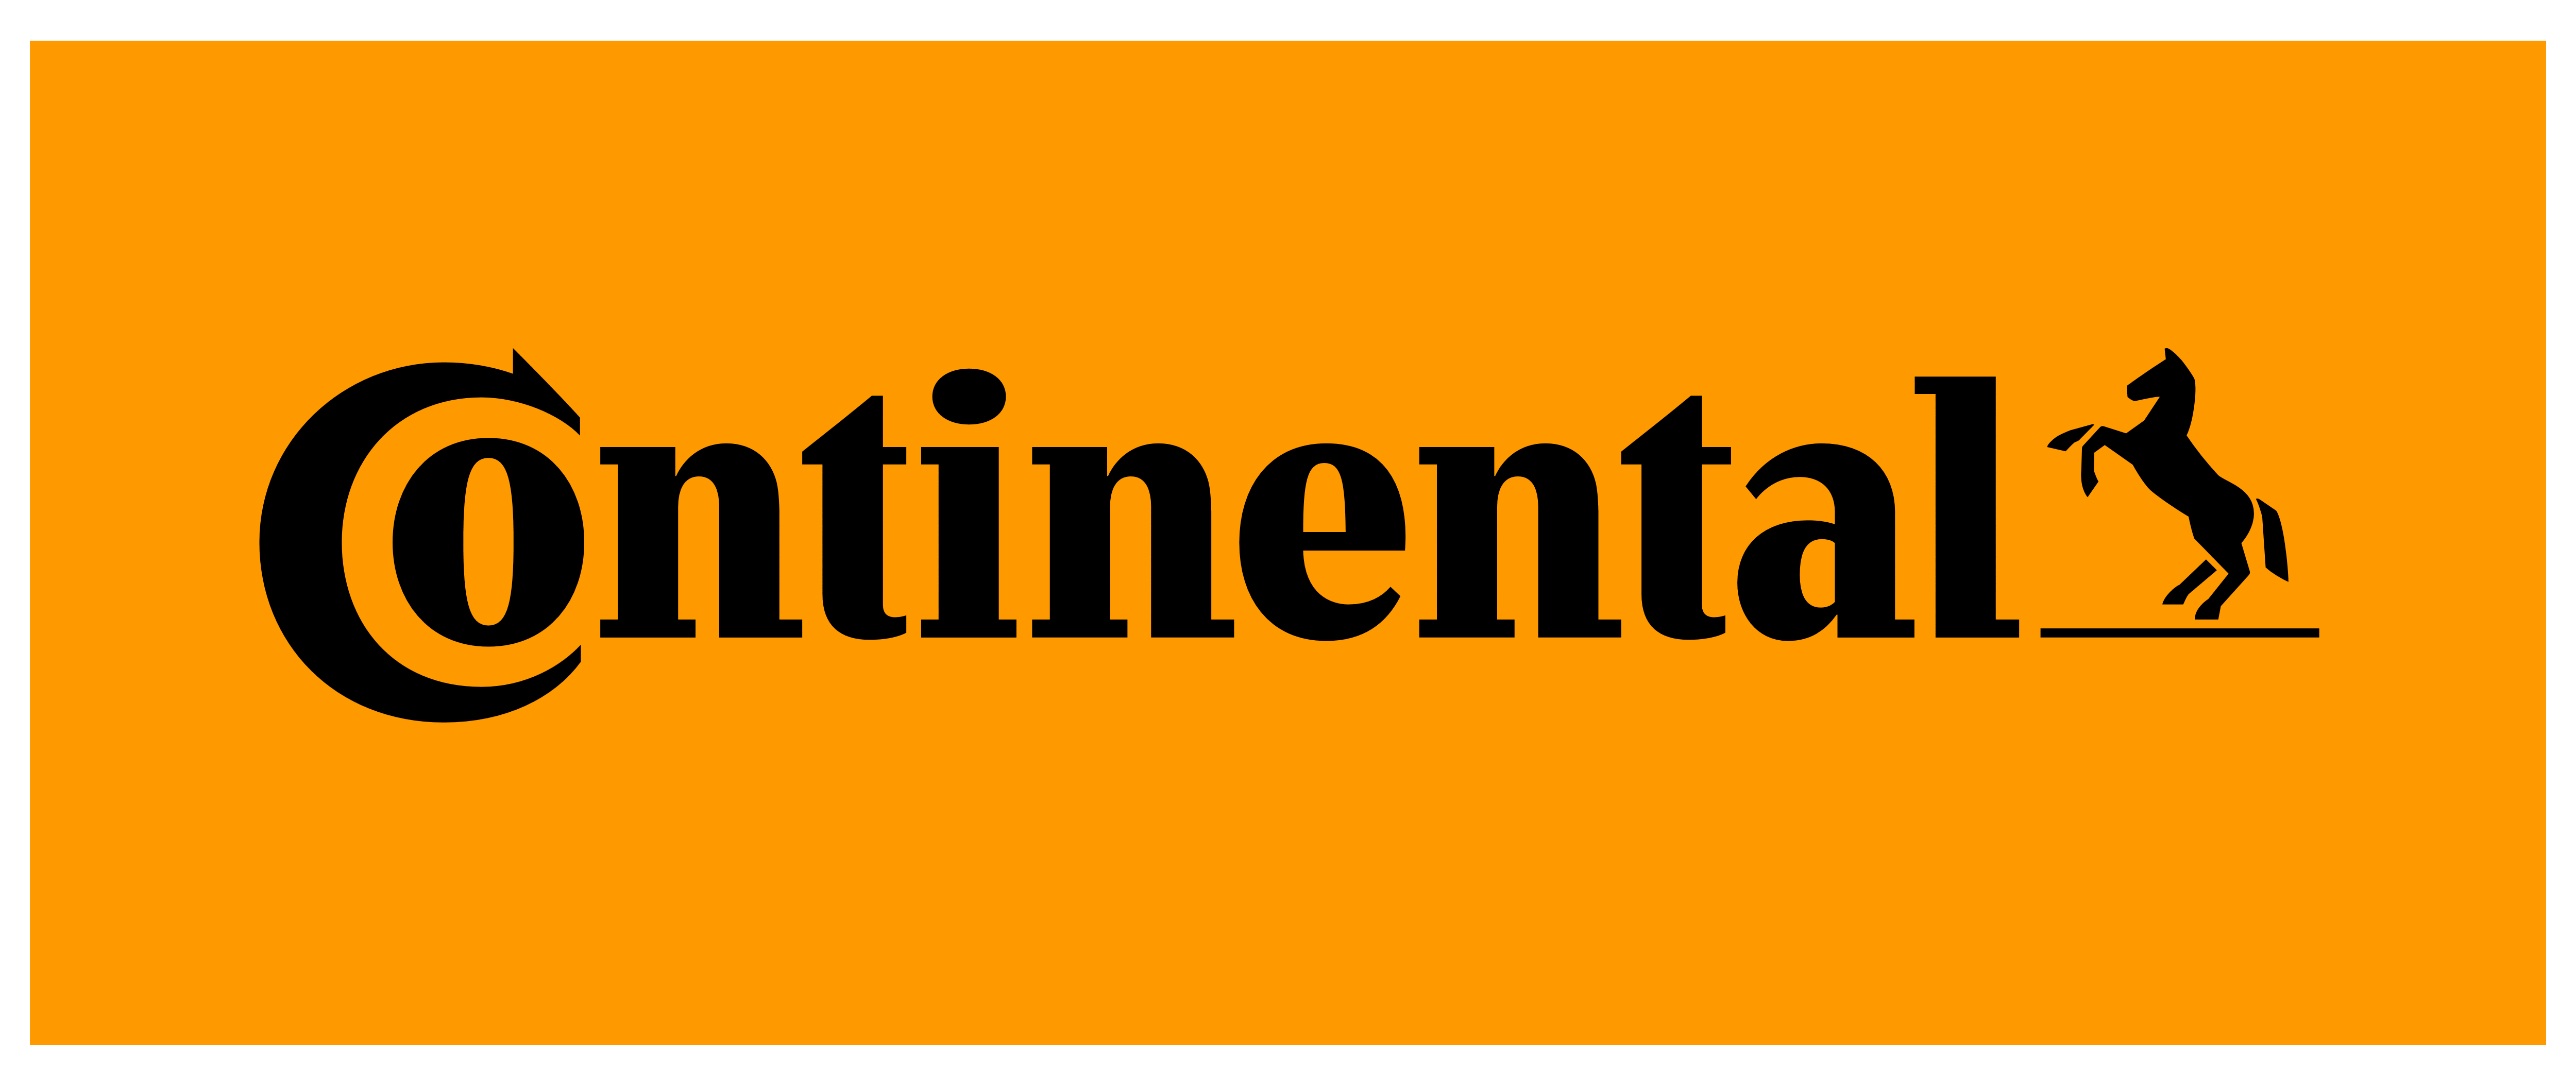 Risultati immagini per continental logo